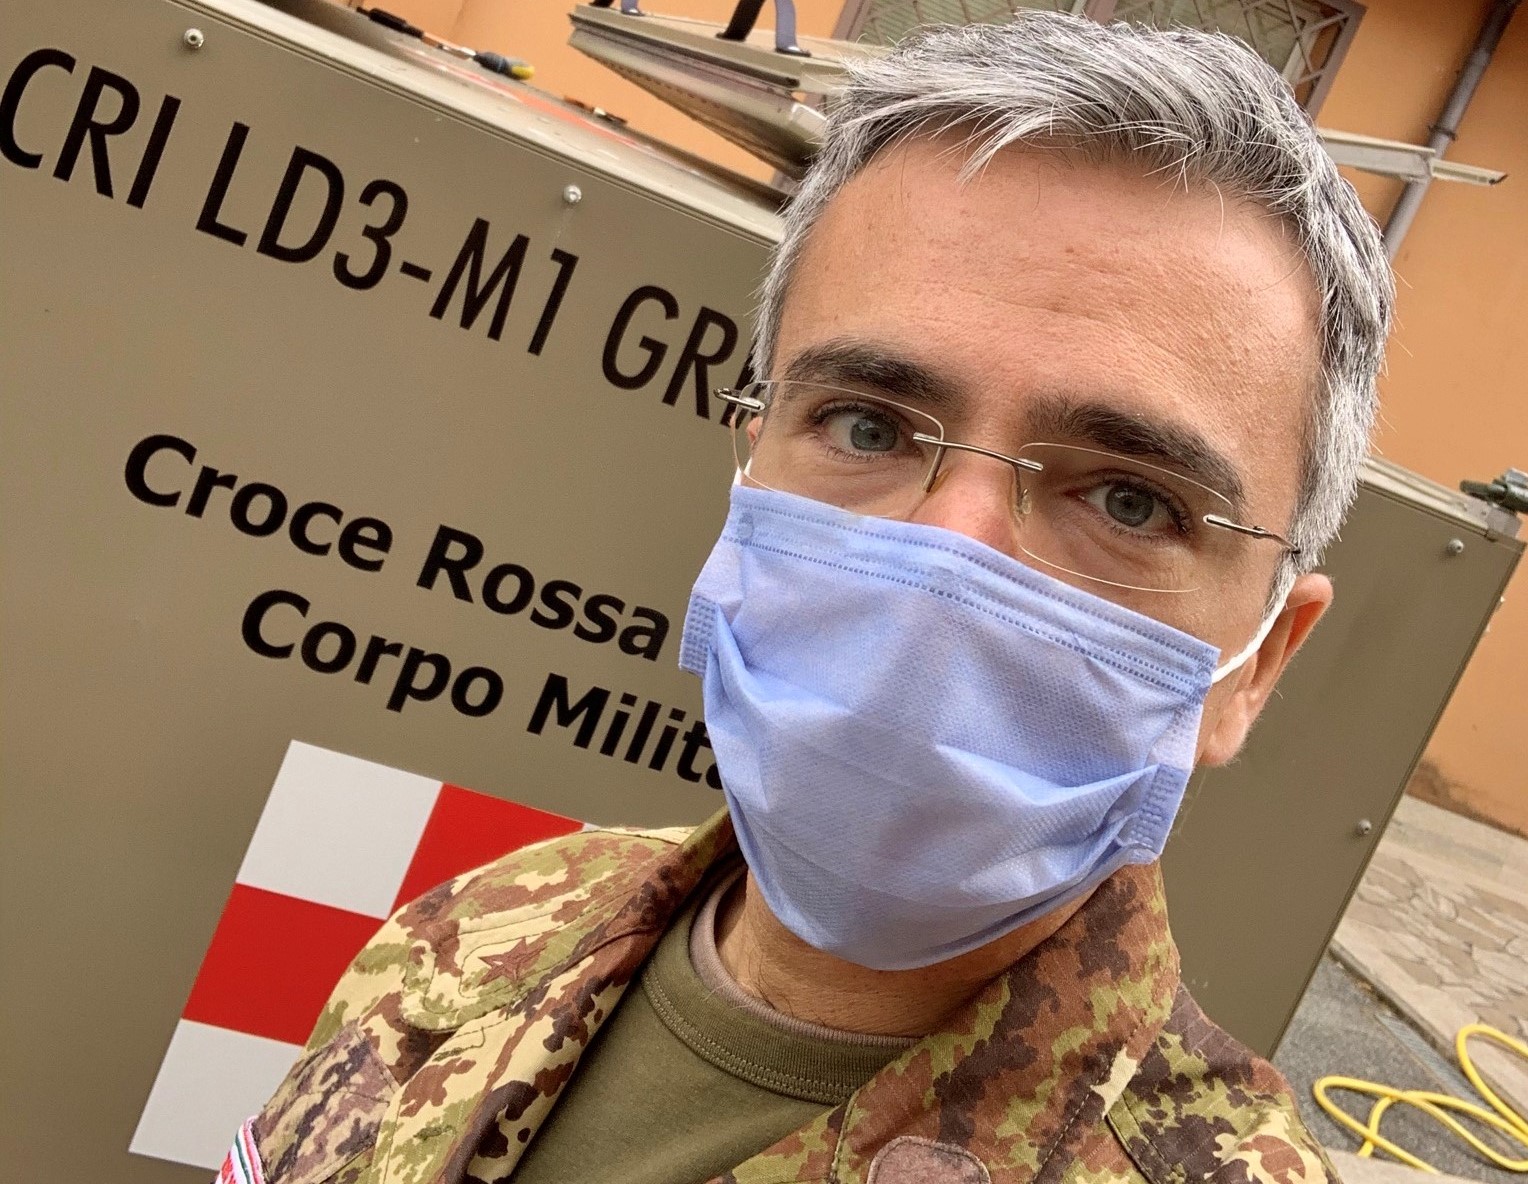 Fabio Rispoli, ufficiale medico della Croce Rossa Italiana, in mimetica e mascherina.